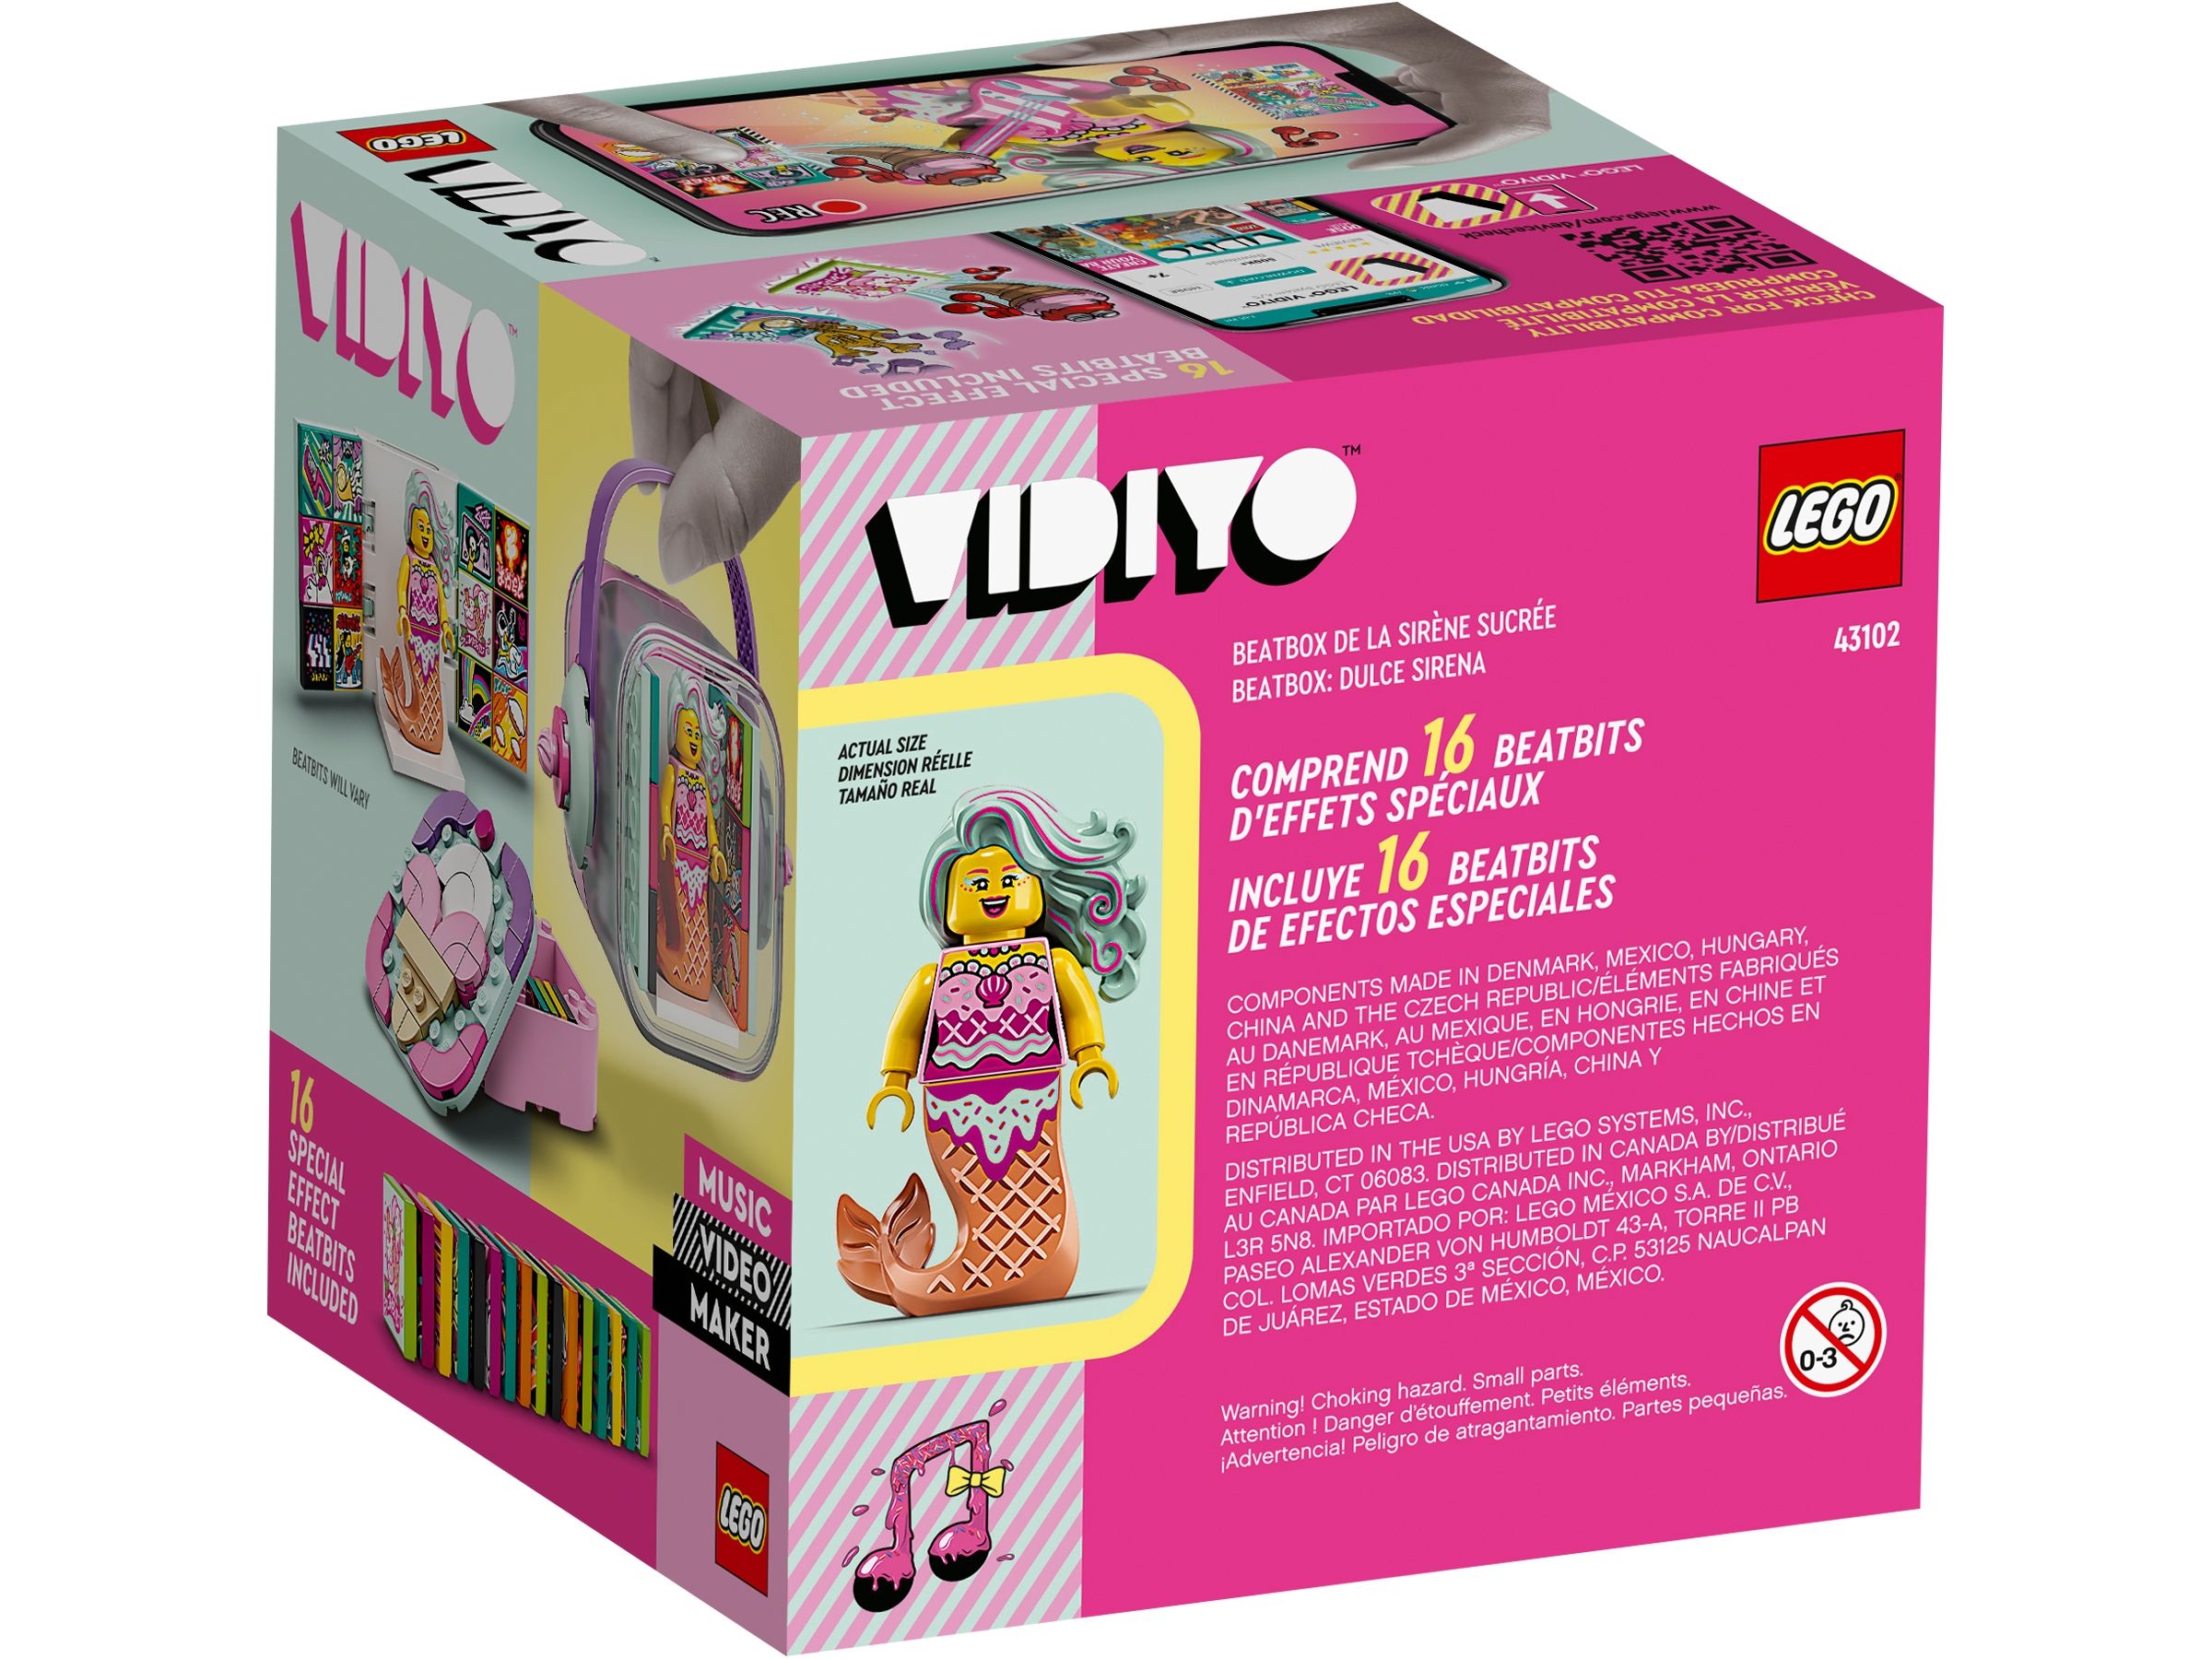 LEGO Vidiyo 43102 Candy Mermaid BeatBox LEGO_43102_alt10.jpg